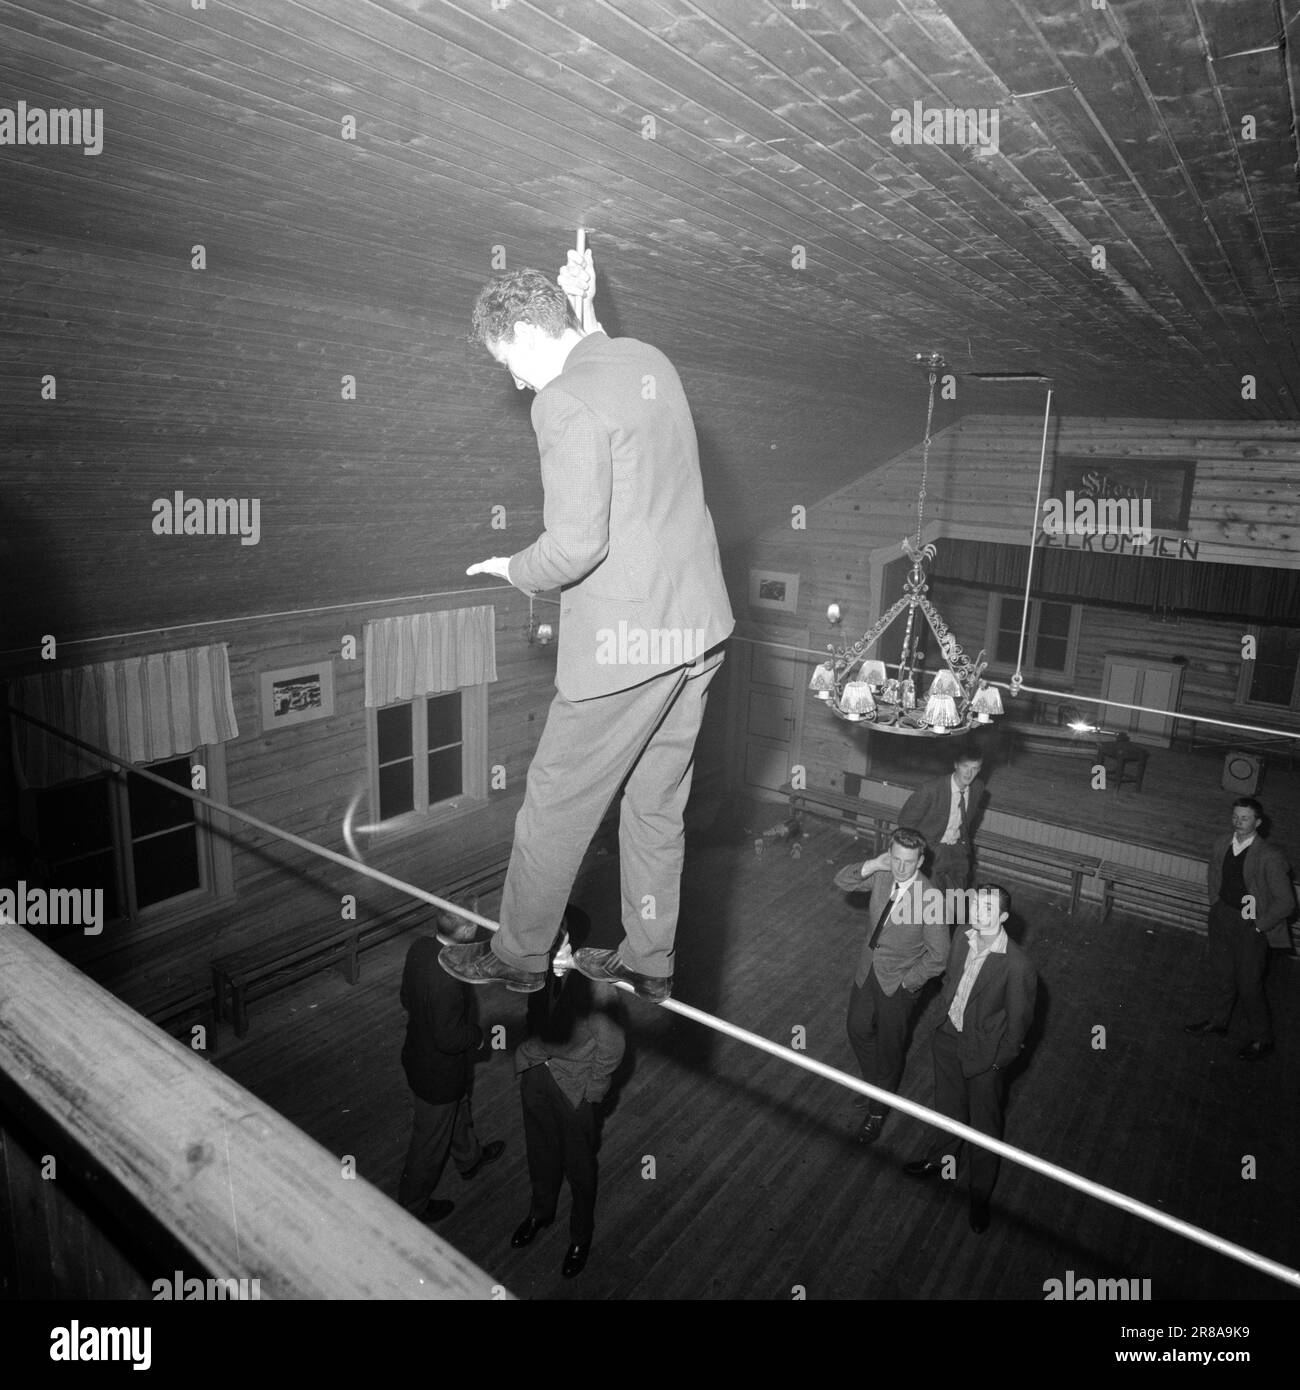 Attuale 44-6-1960: E ci era ballo nella stanza andiamo ad una danza di sabato in un villaggio di montagna ad ovest di Røros alle tre del mattino, i giovani sono ancora attivi, mentre uno dei più anziani si è posato per riposarsi sullo sfondo. Foto: Aage Storløkken / Aktuell / NTB ***FOTO NON ELABORATA*** Foto Stock